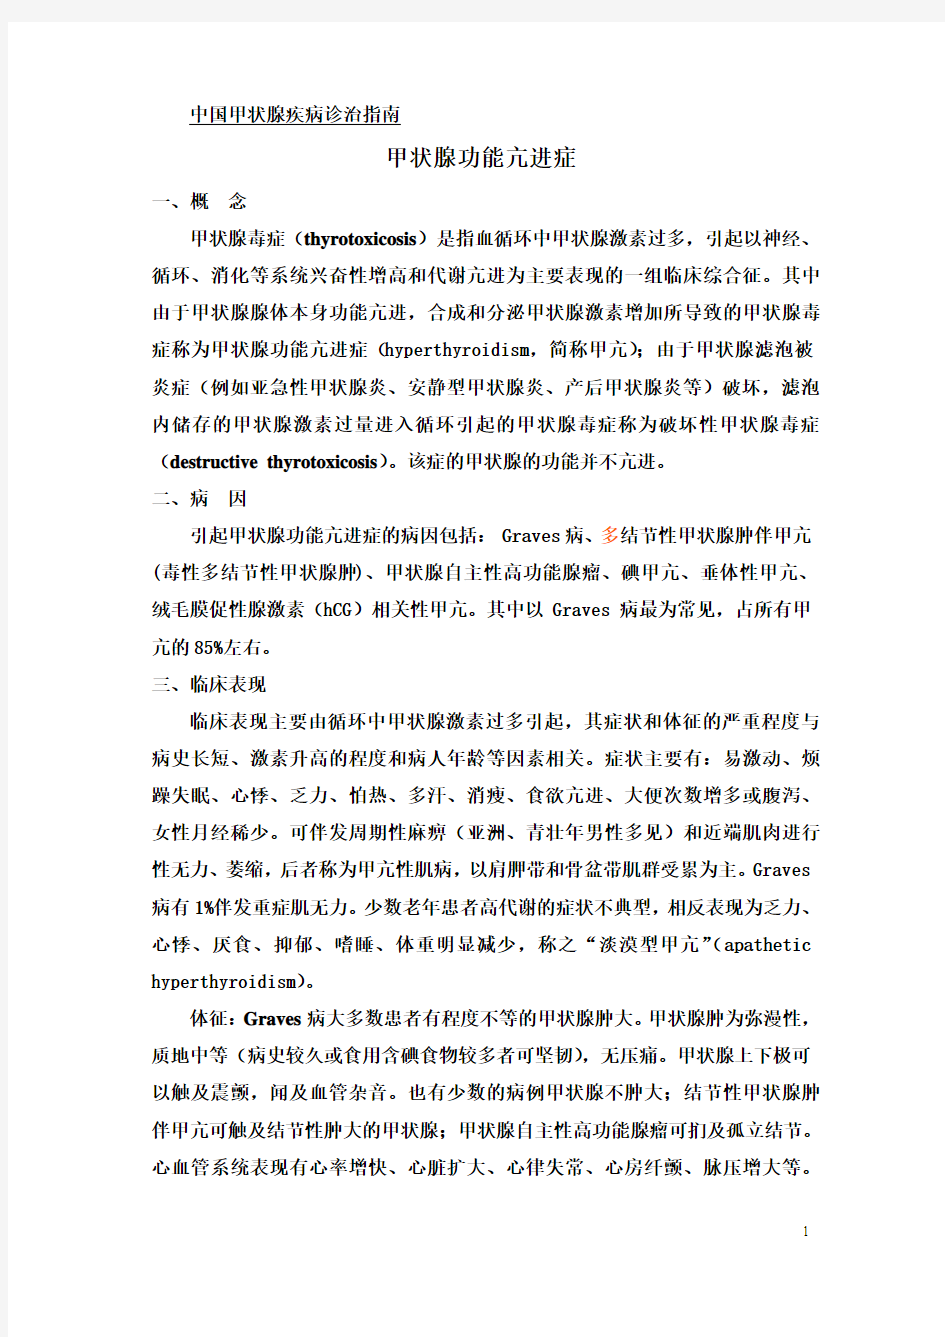 中国甲状腺疾病诊治指南-甲亢,第9稿,070607